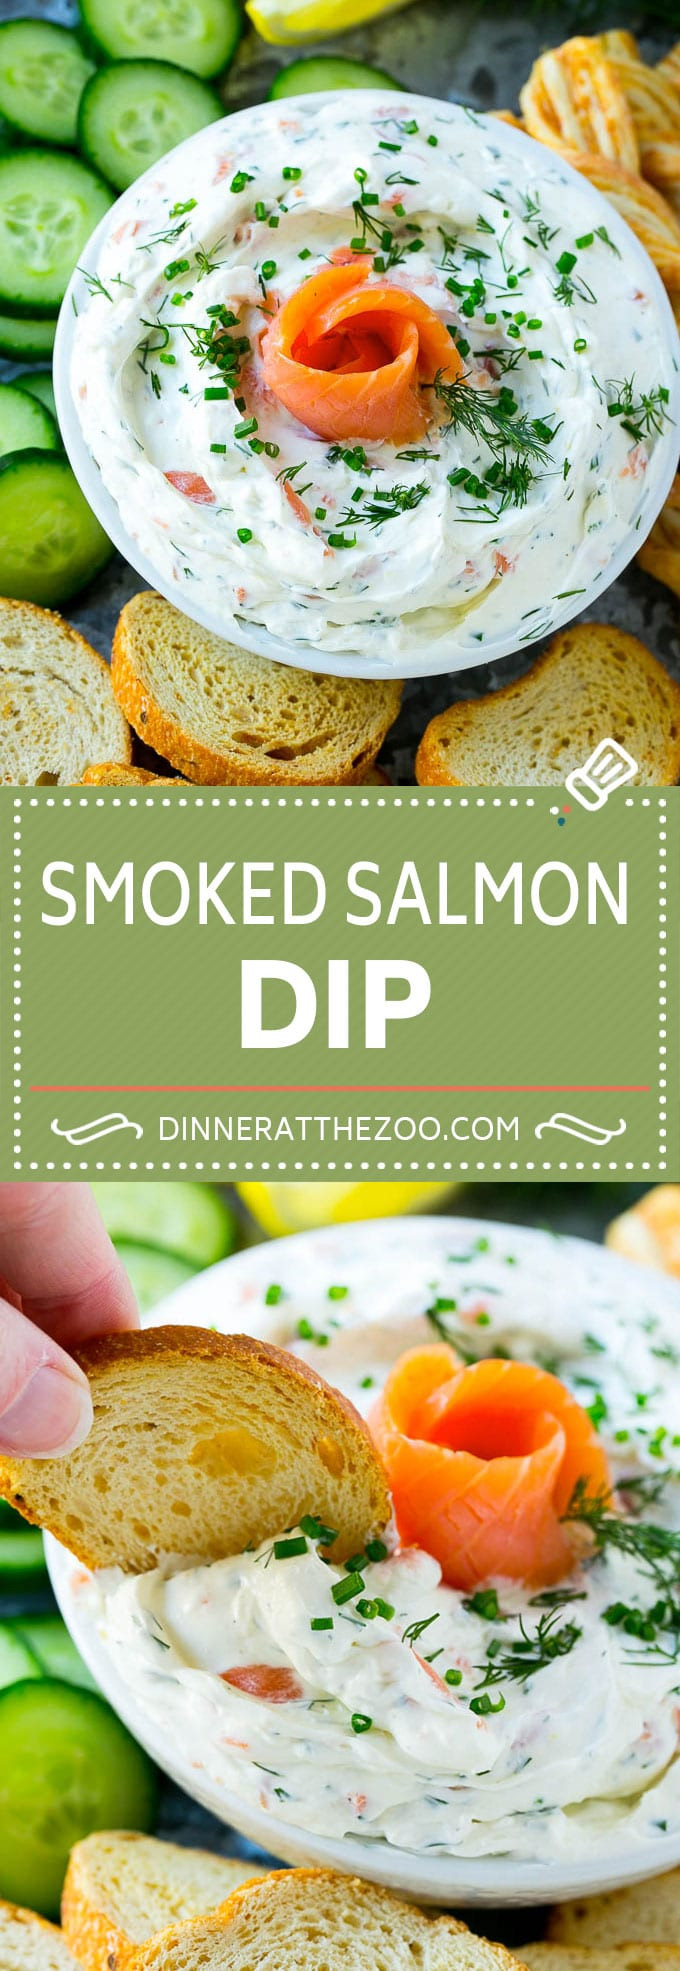 Smoked Salmon Dinner Recipe
 Smoked Salmon Dip Dinner at the Zoo